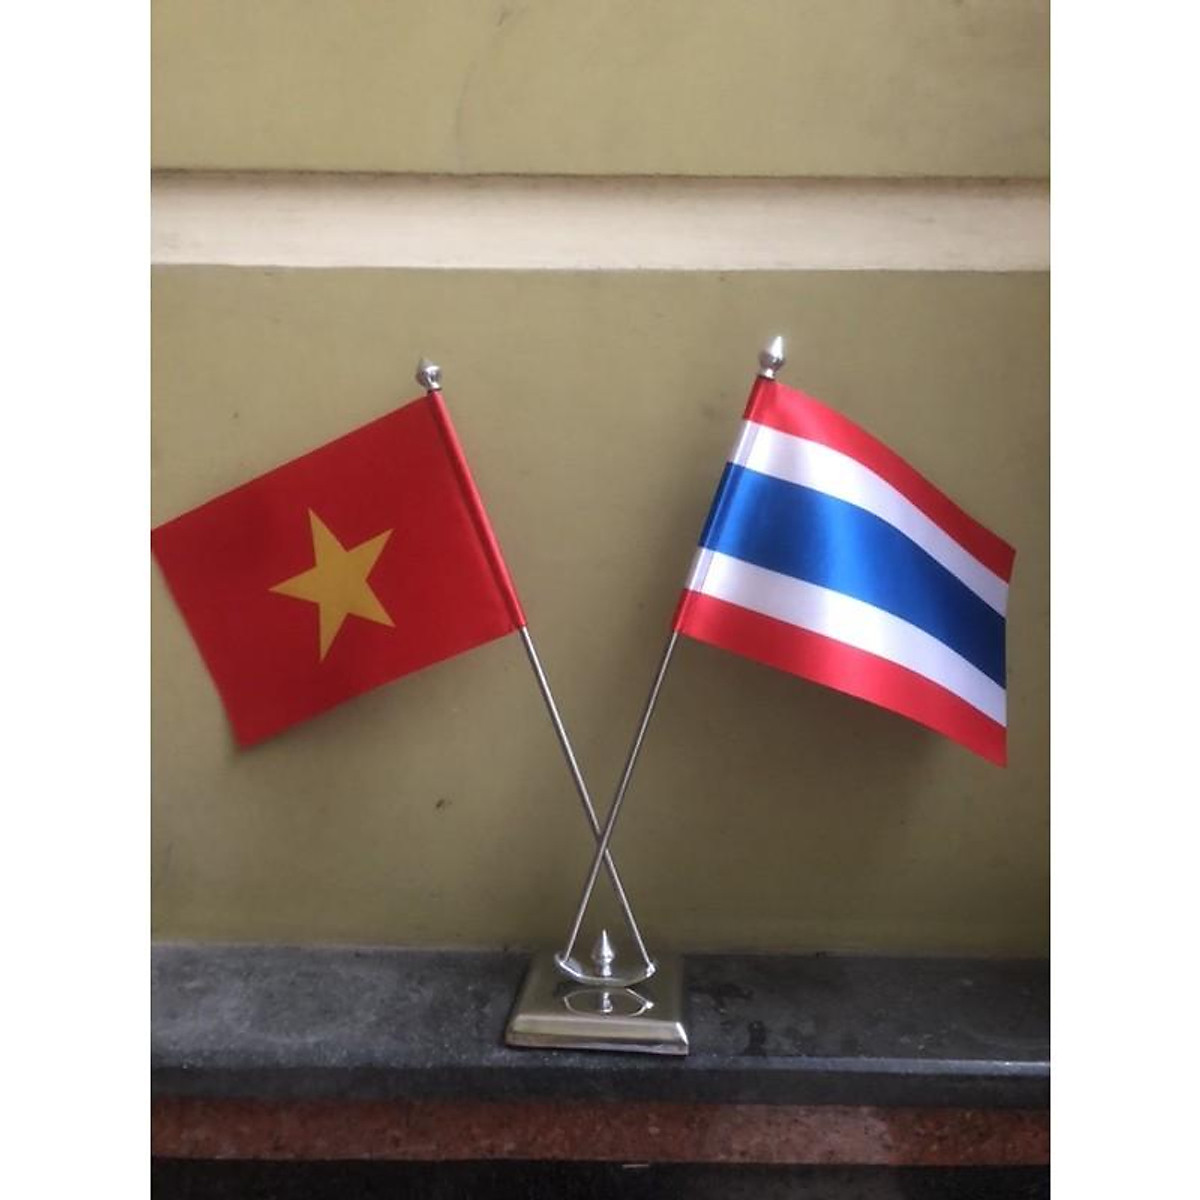 Để bàn Việt Nam-Thái Lan là món quà ý nghĩa và độc đáo cho những người yêu thích văn hóa, lịch sử của hai quốc gia. Chiếc để bàn sẽ mang lại vẻ đẹp và tinh tế cho không gian làm việc của bạn. Hình ảnh về những chiếc để bàn độc đáo sẽ khiến cho bạn cảm thấy háo hức muốn sở hữu một chiếc.